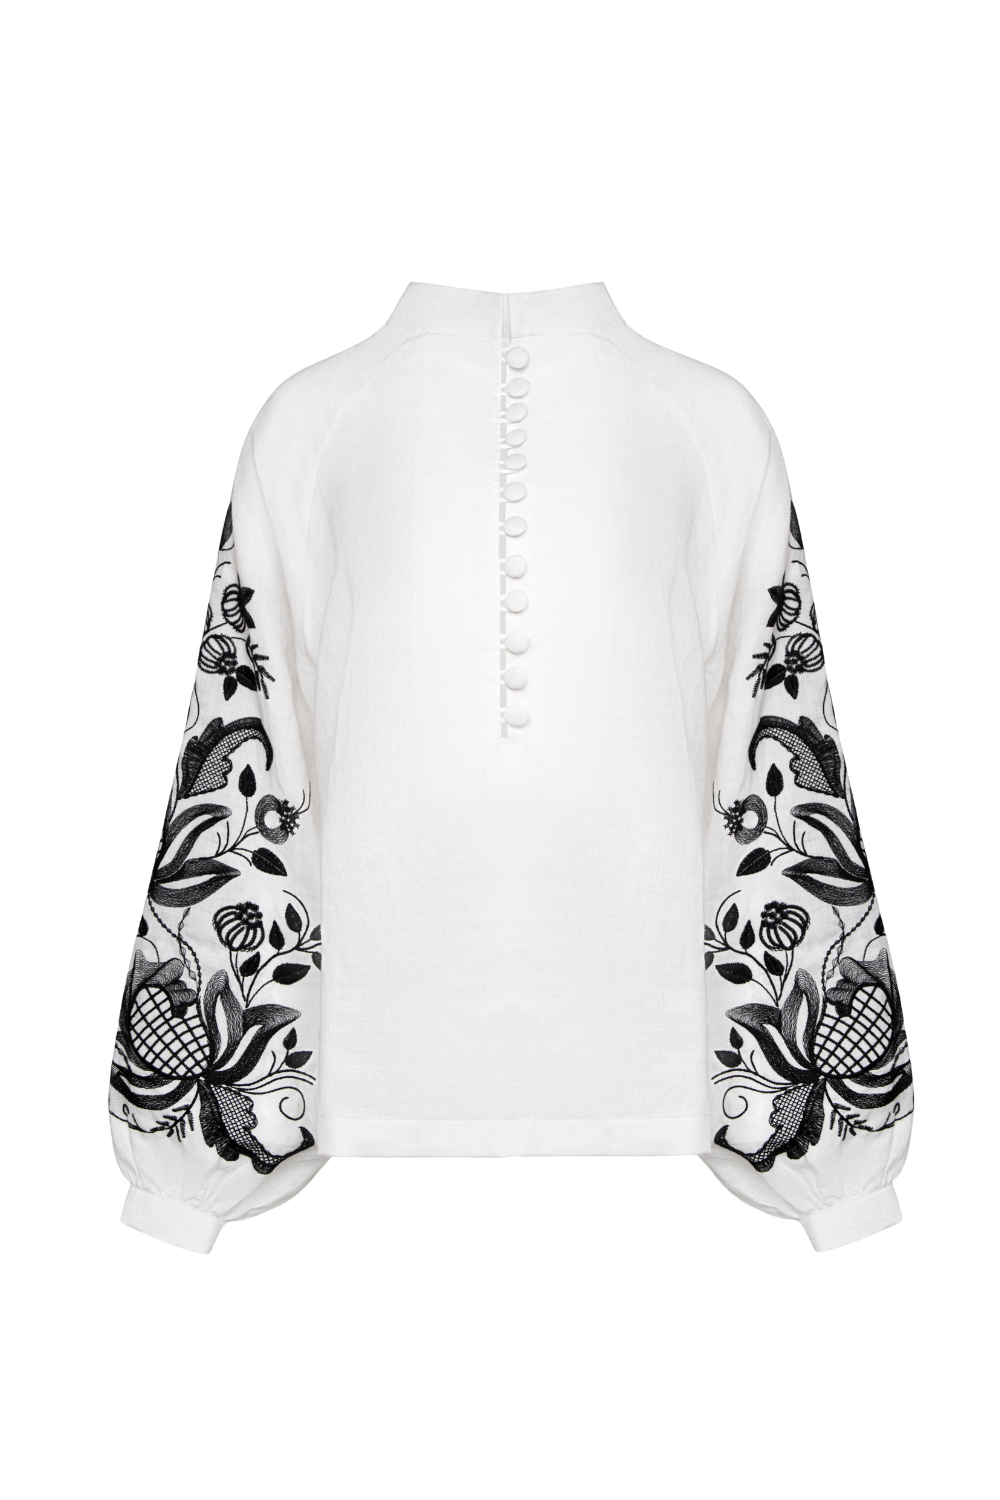 Блуза на ґудзиках Гранат біла вишивка (Гаптування) G_0024